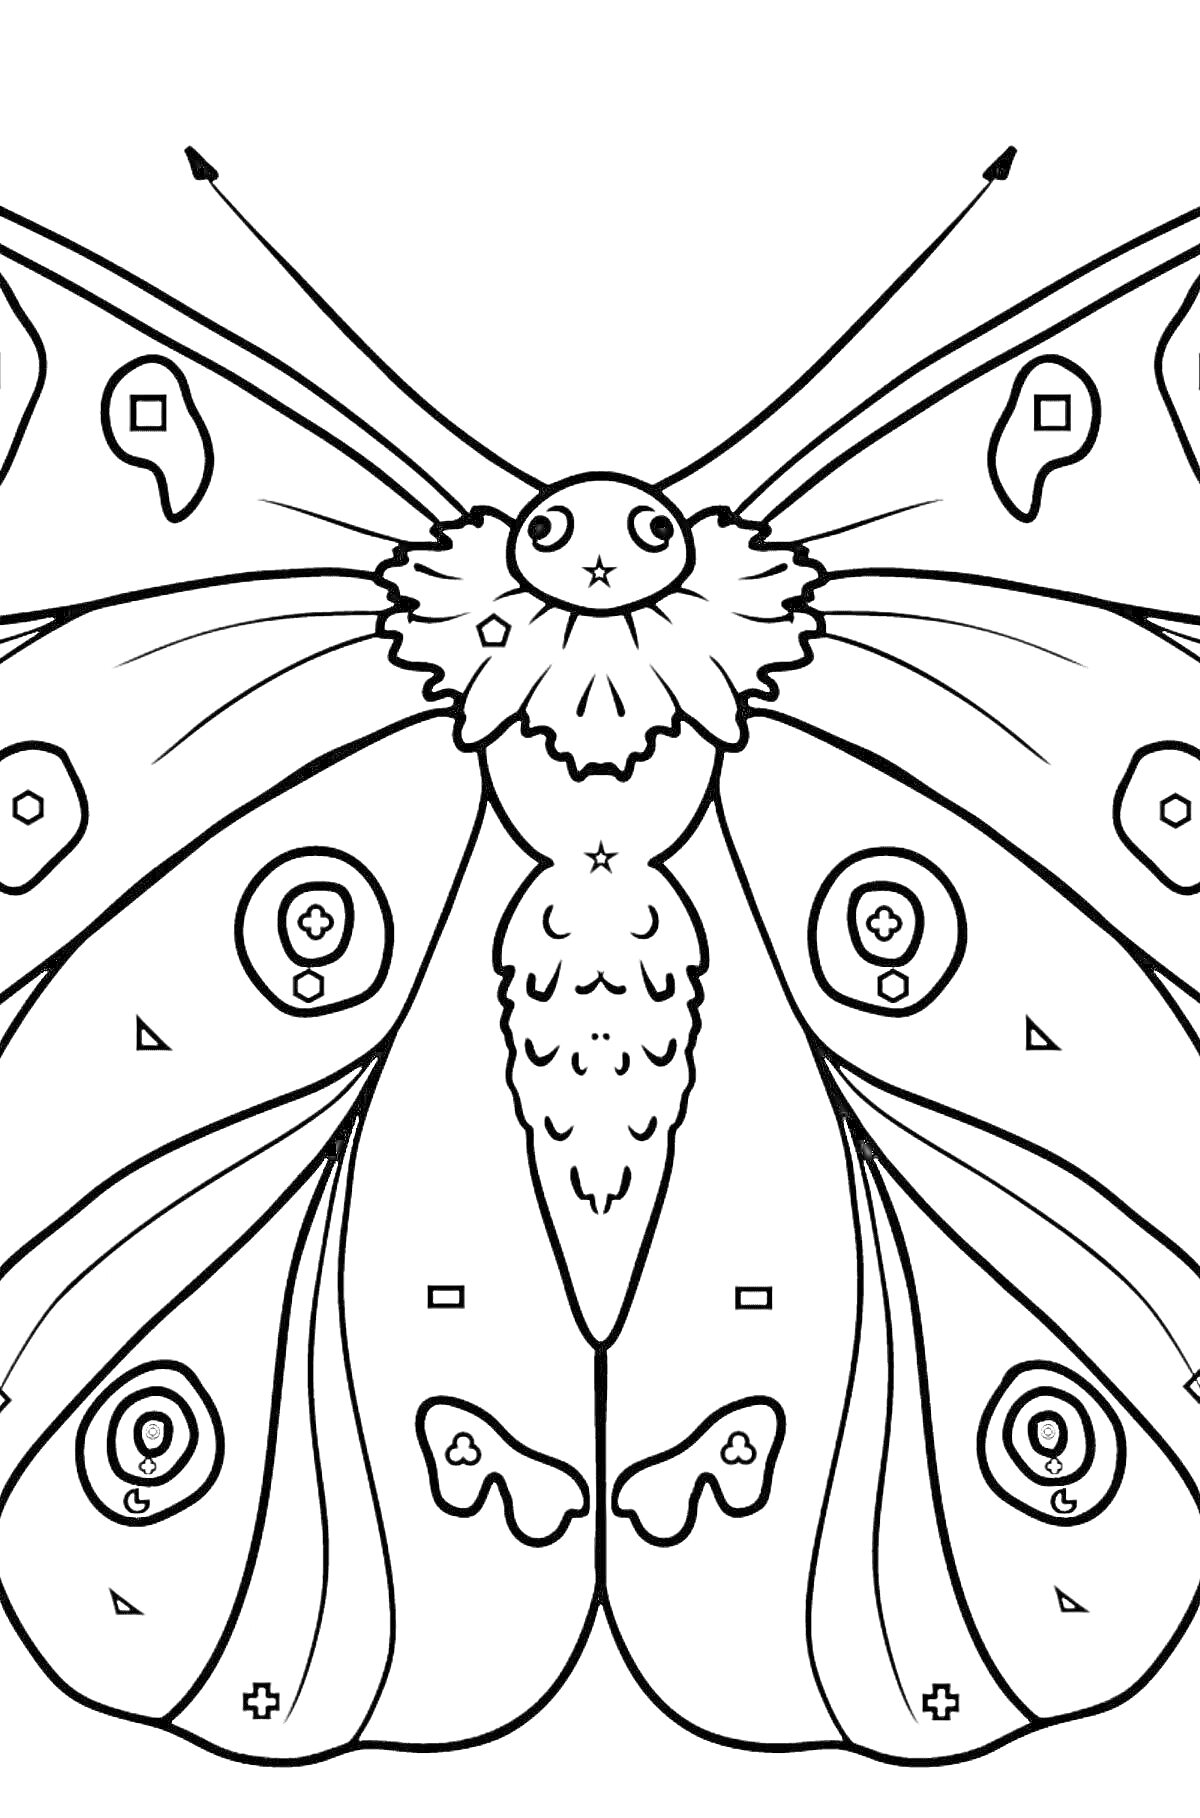 Раскраска Бабочка Аполлон с рисунком крыльев и телом